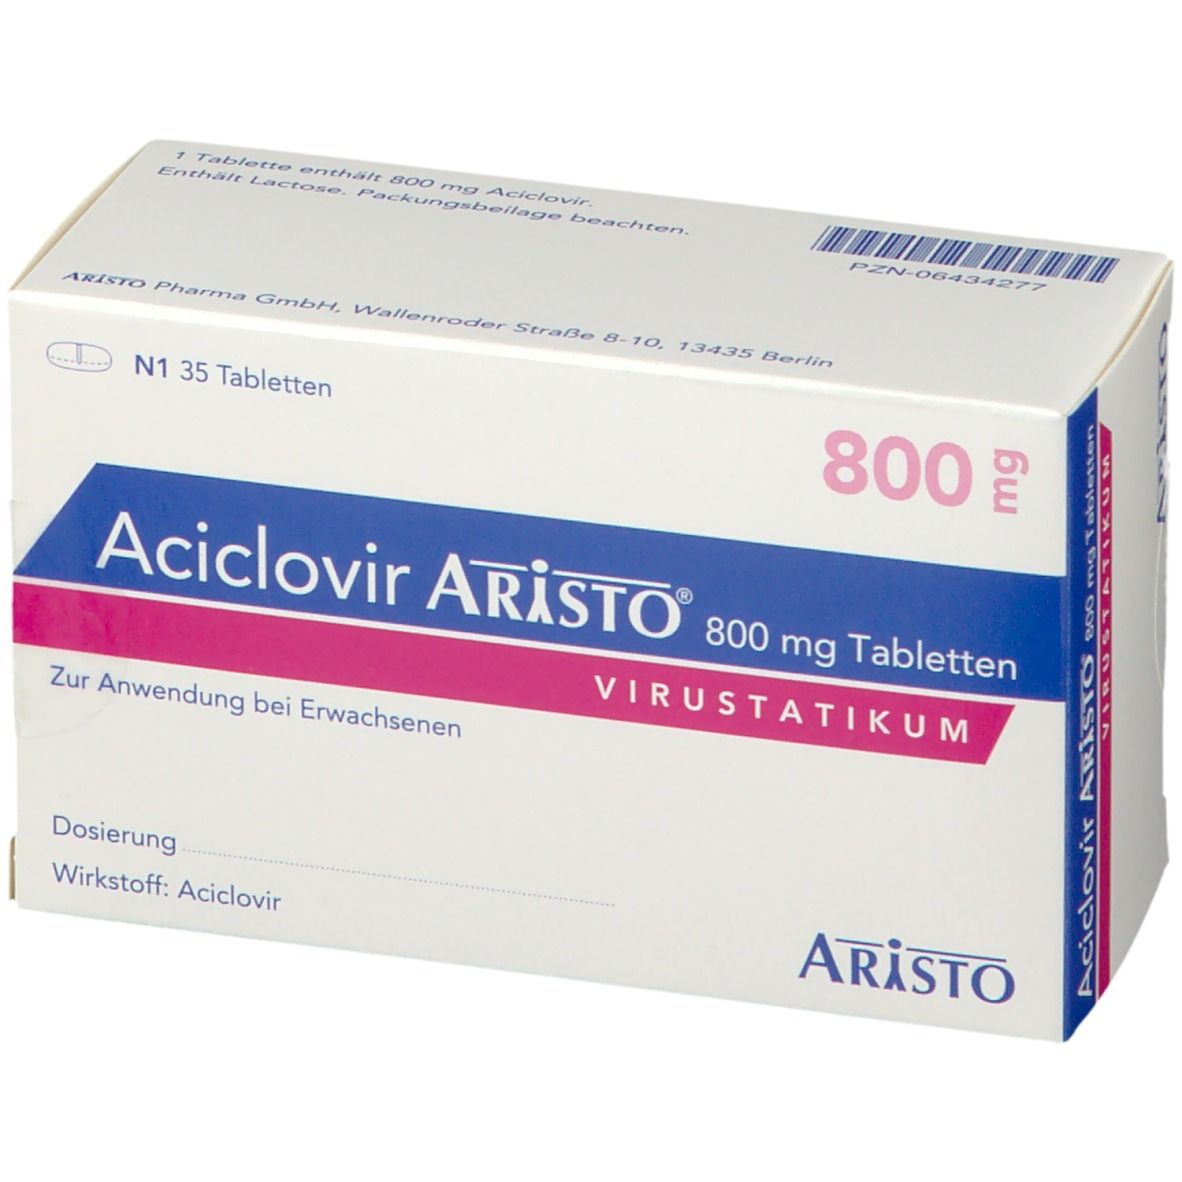 Aciclovir Aristo® 800 mg